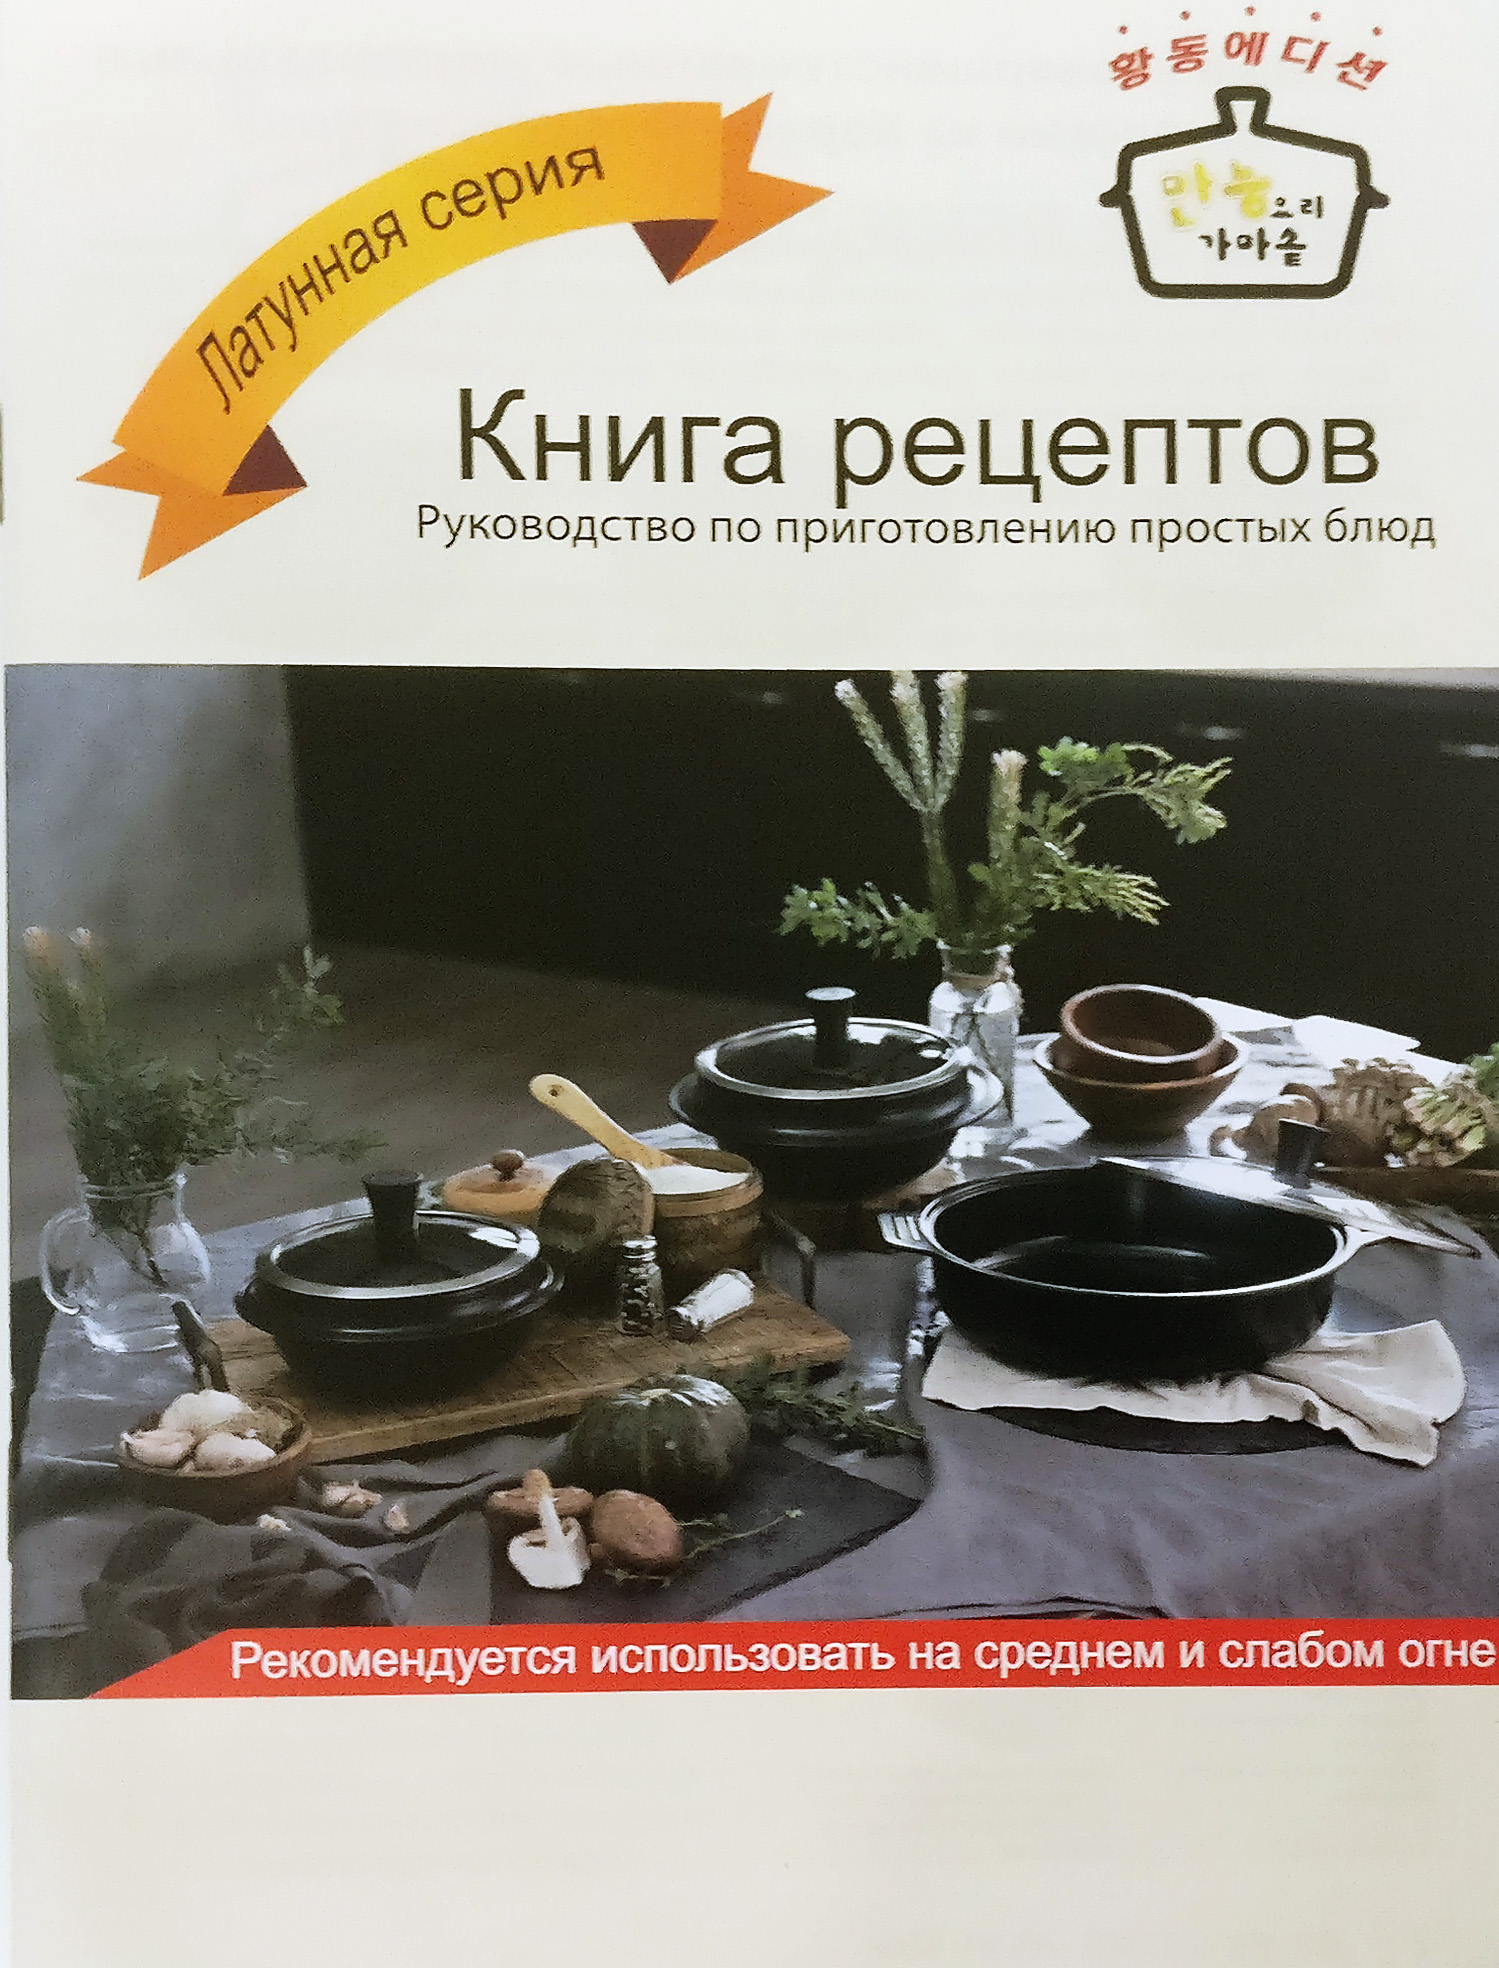 Книга рецептов - подарок при покупке Казанка с двойными стенками (эффектом духовки) и стеклянной крышкой